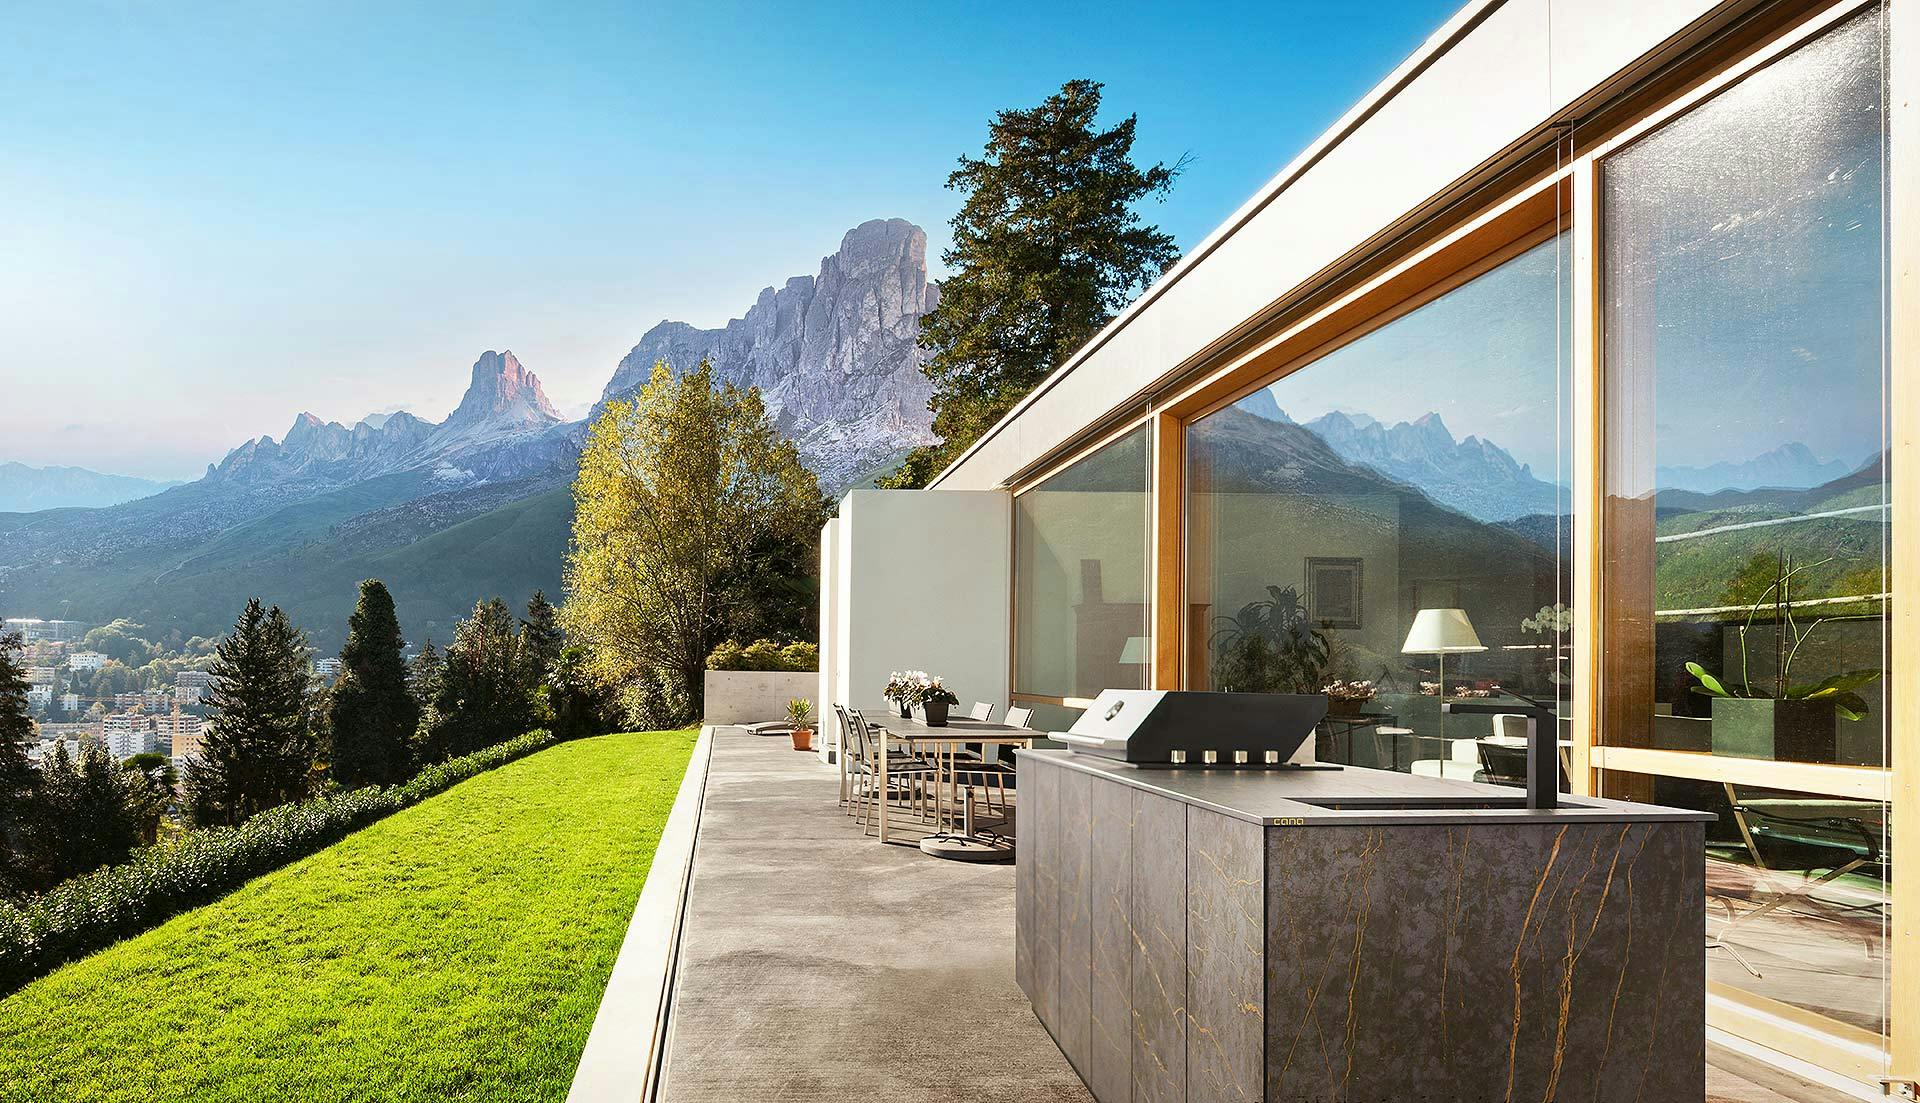 Numero immagine 40 della sezione corrente di Outdoor kitchens for a luxury garden di Cosentino Italia